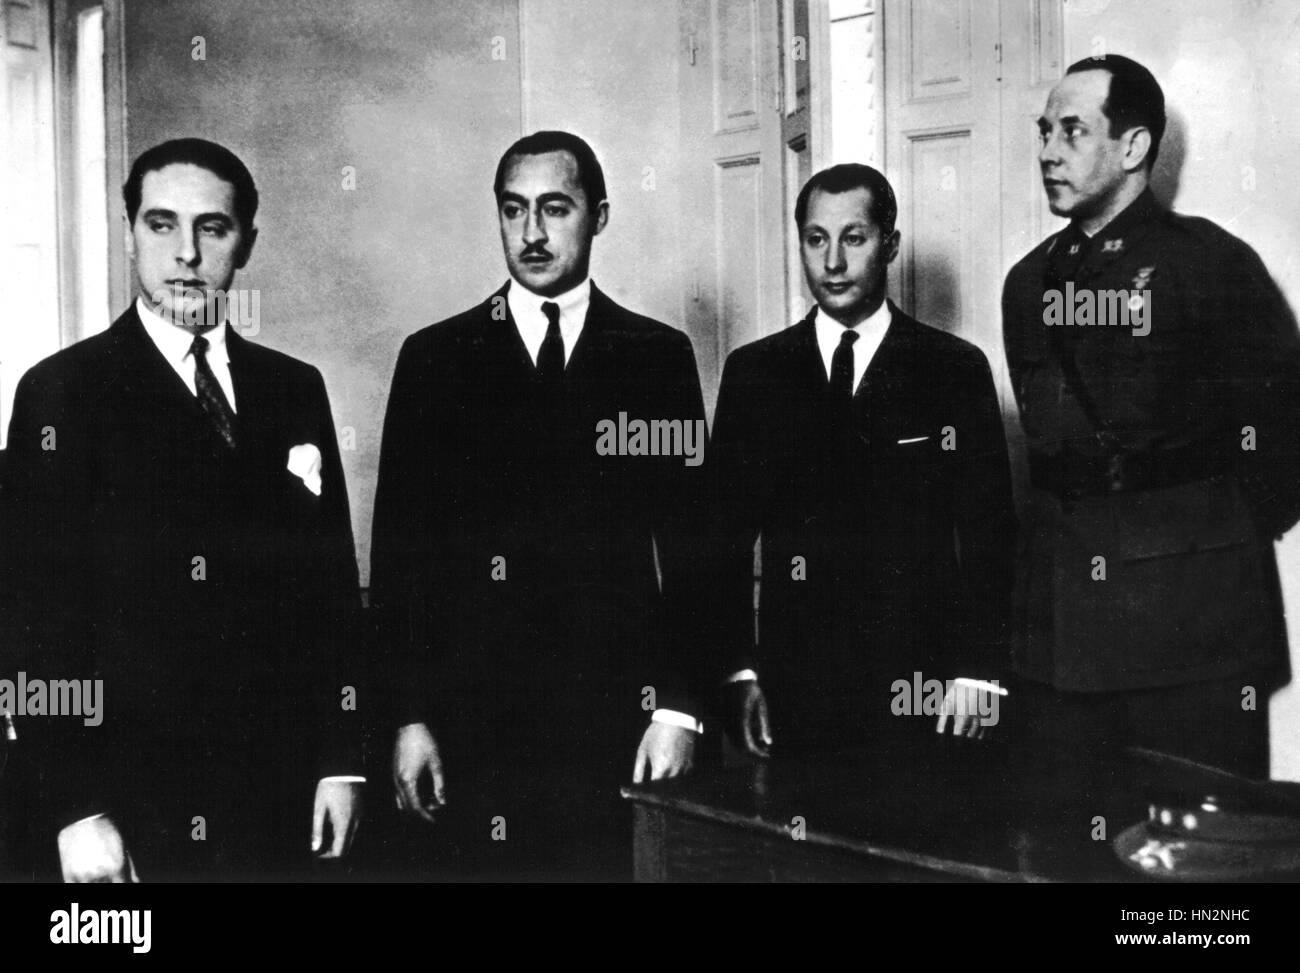 Primo de Rivera's sons devant le conseil de guerre à Madrid. De gauche à droite : défenseur Don Jose et Don Miguel de Rivera, Don Sancho (après l'échec du coup militaire) Août 1932 Espagne Banque D'Images